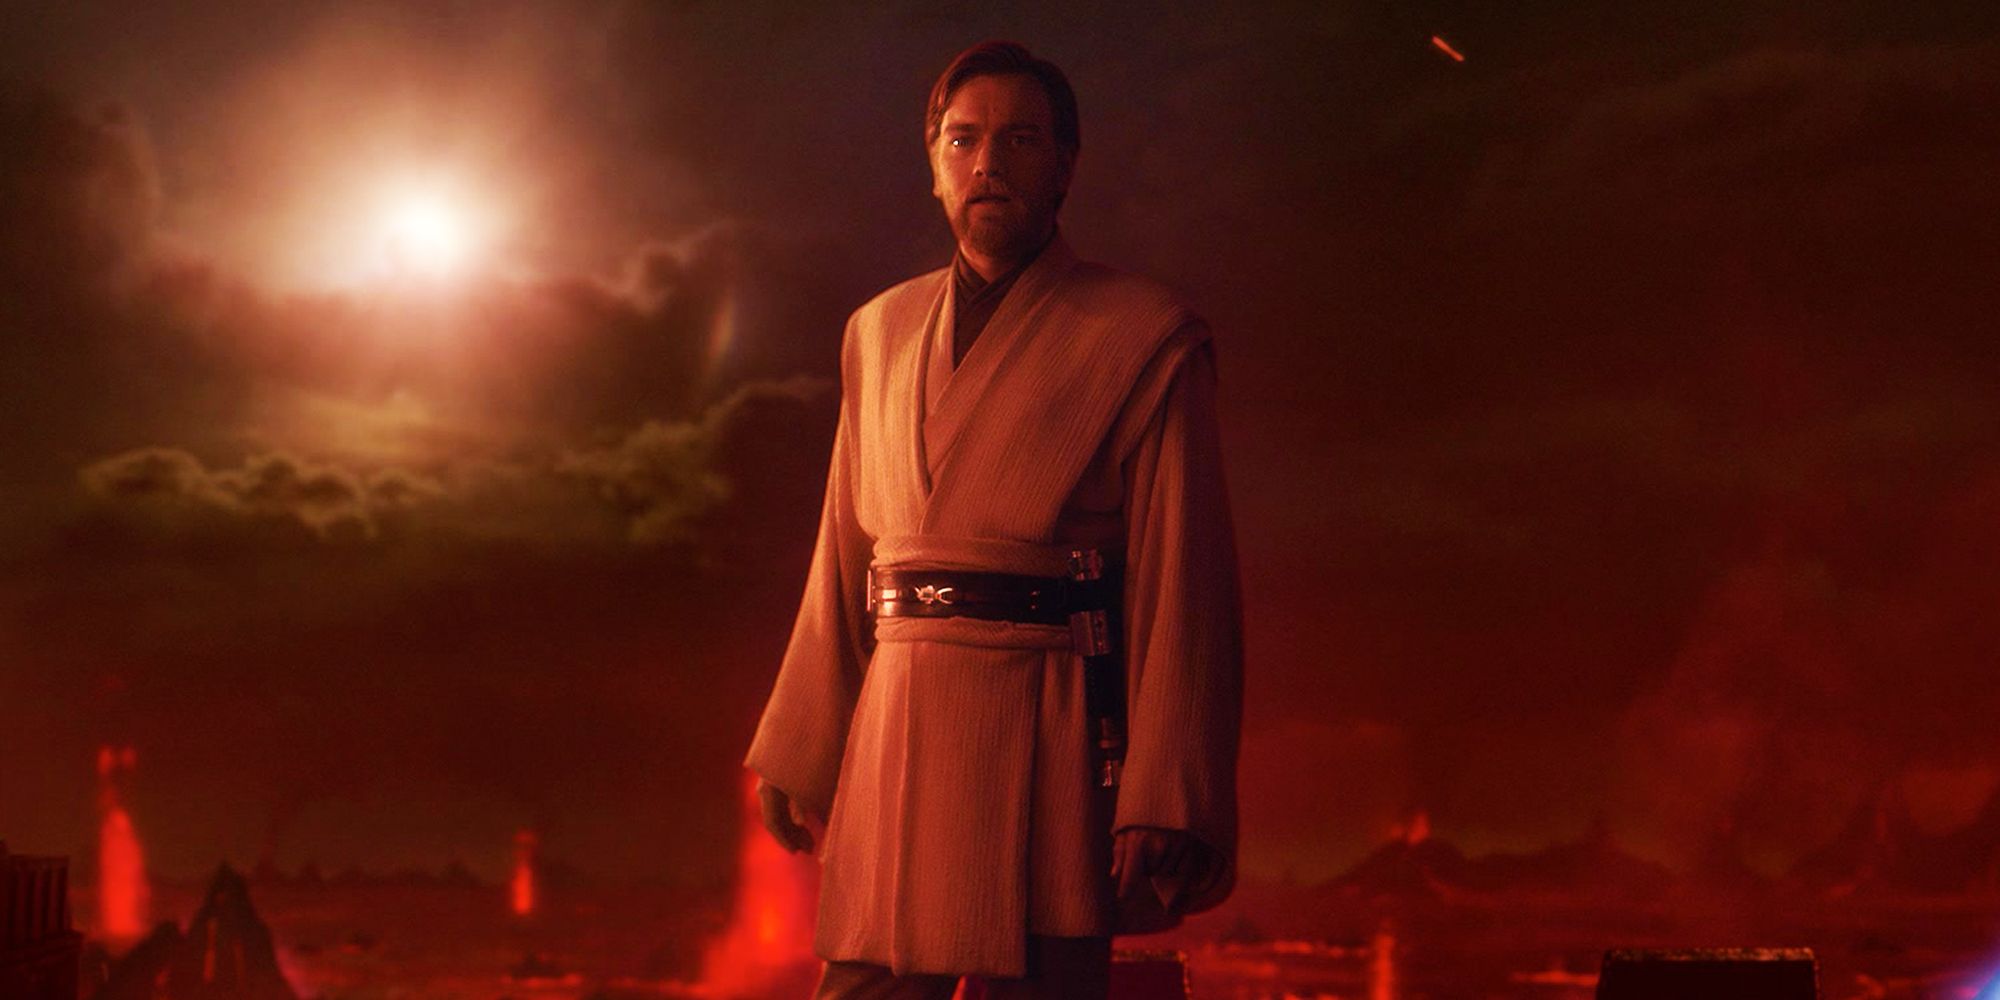 Obi-Wan Kenobi z Ewana McGregora wspomina Anakina, używając absolutu niczym Sith, patrząc poważnie na Mustafara